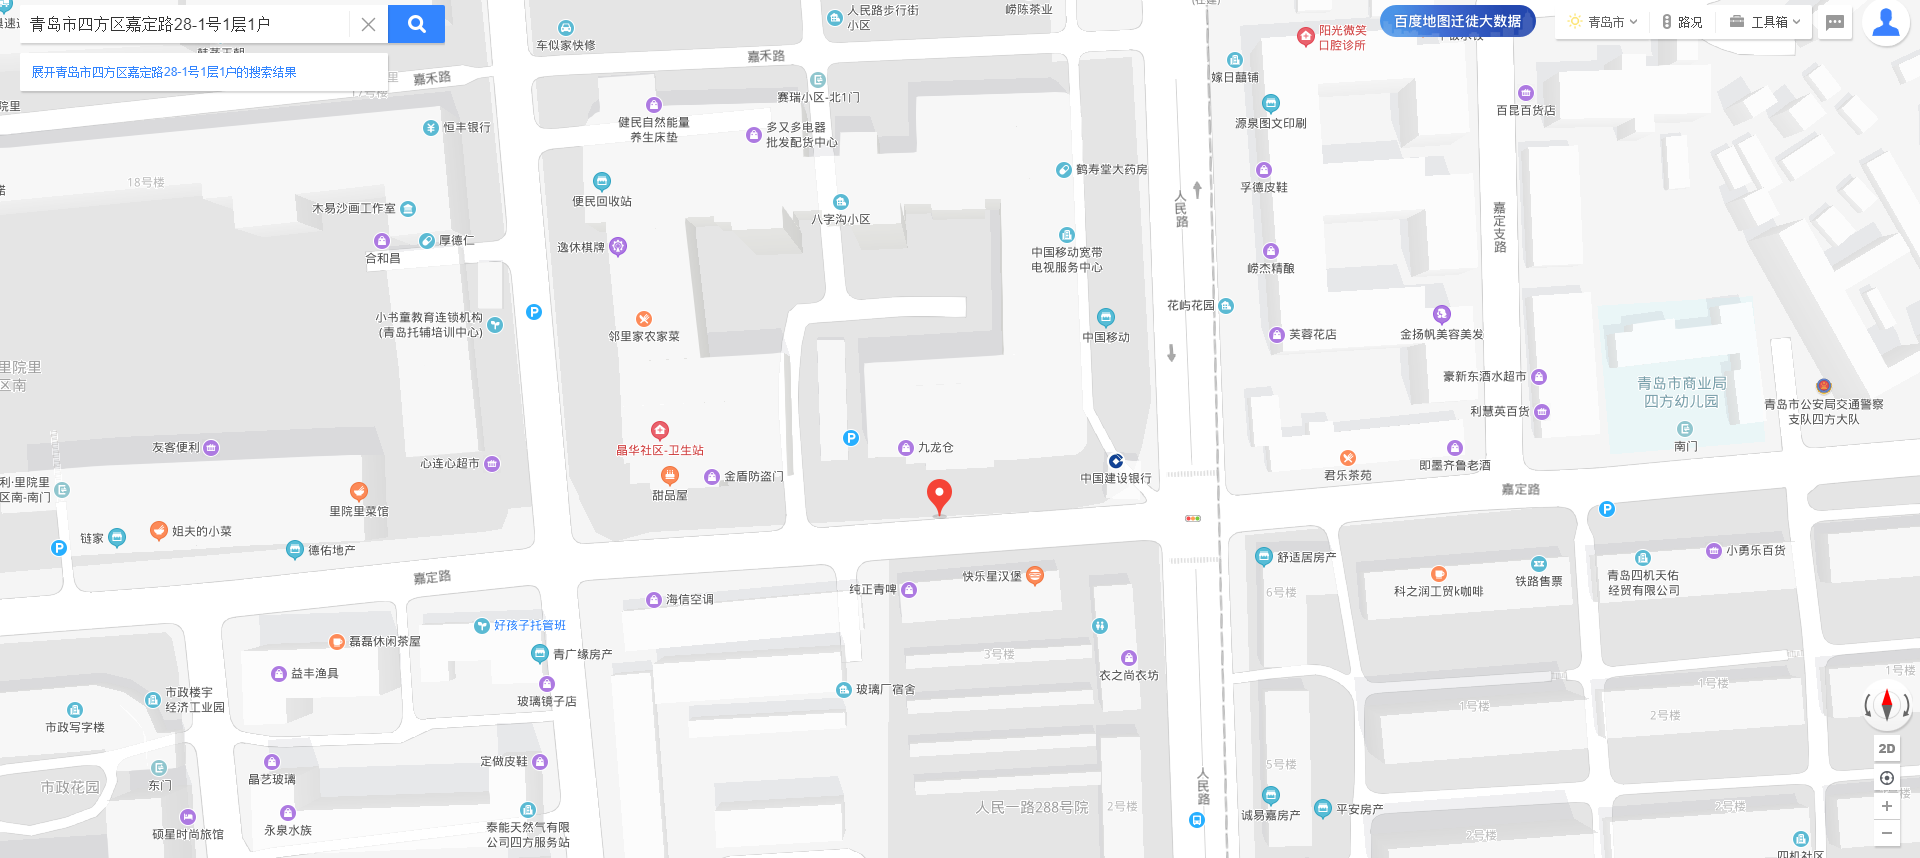 青岛市四方区嘉定路28-1号1层1户 - 百度地图.png